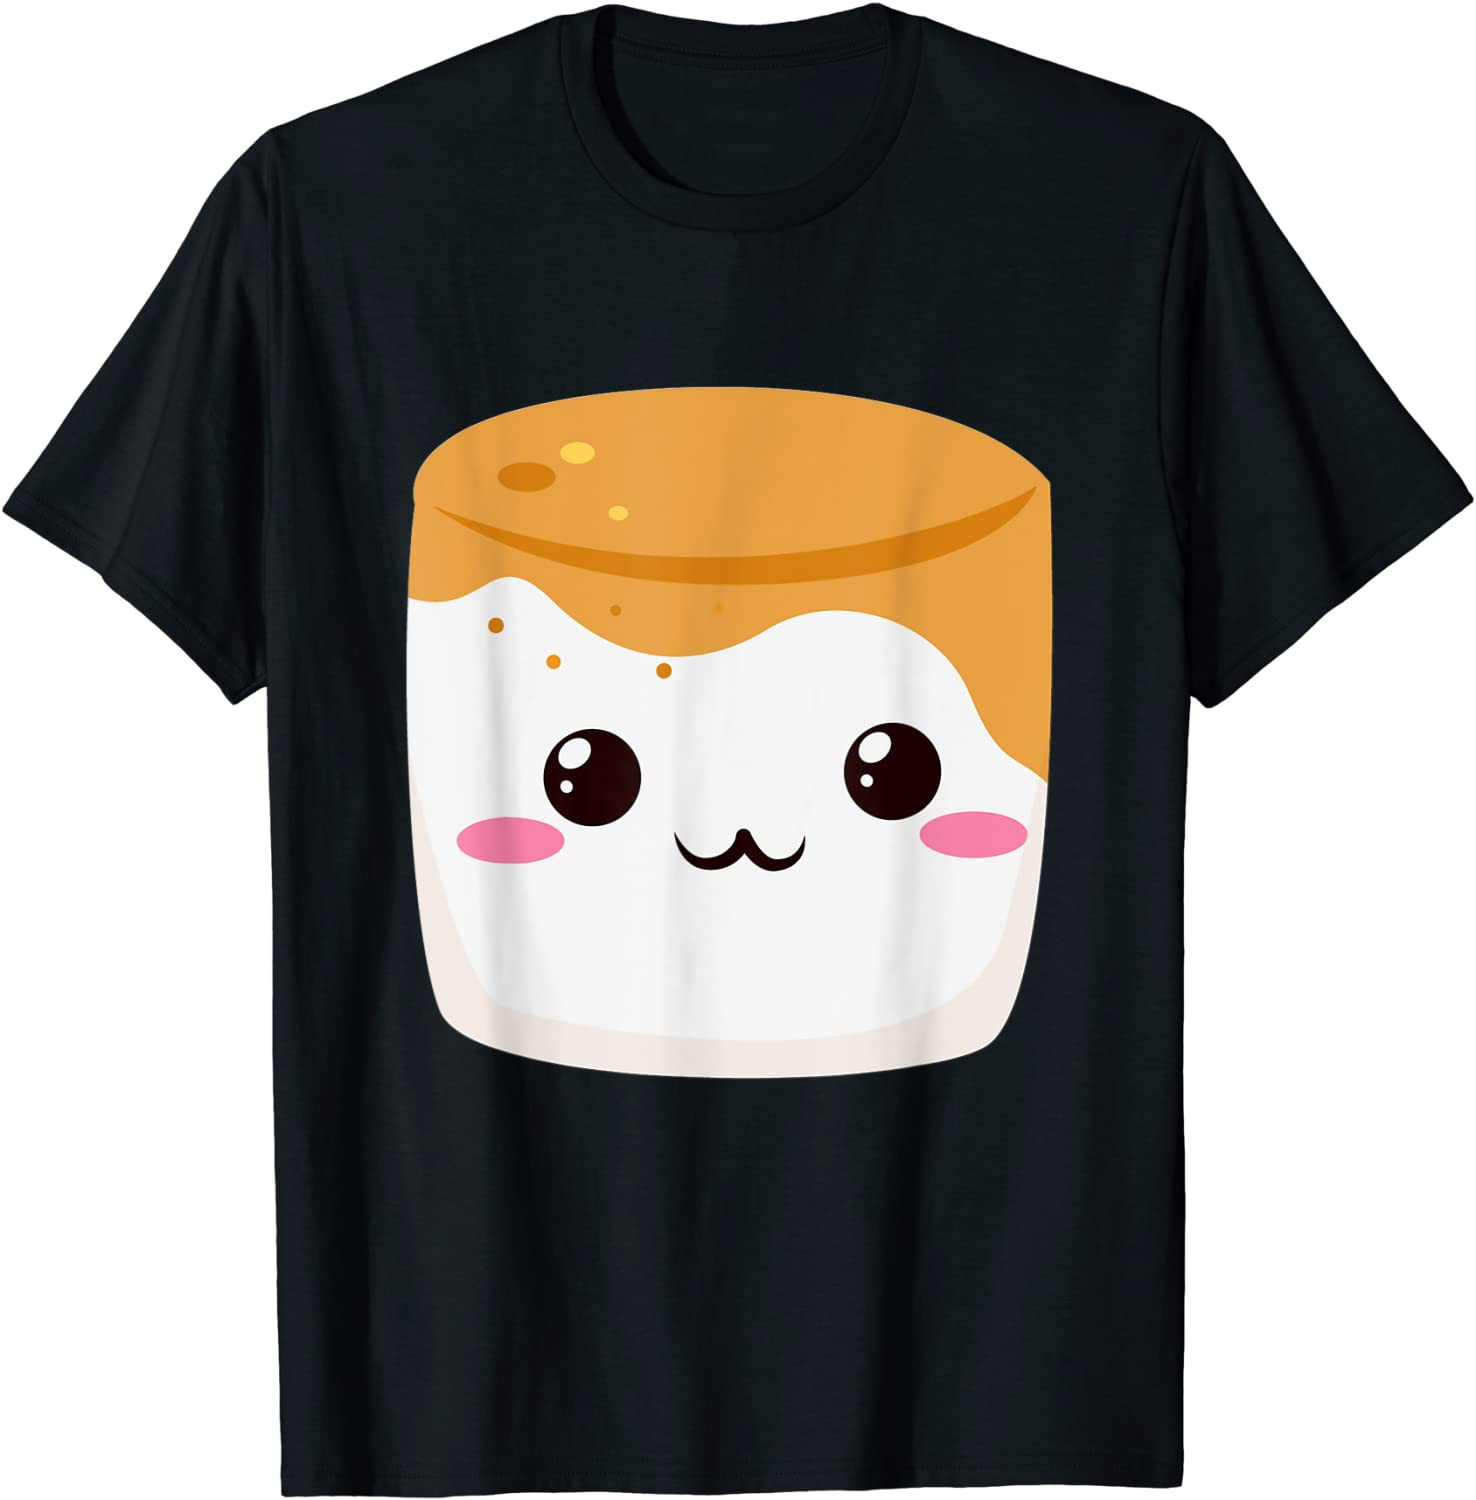 Kawaii Halloween Group Costume S'mores Caramel Marshmallow T-Shirt